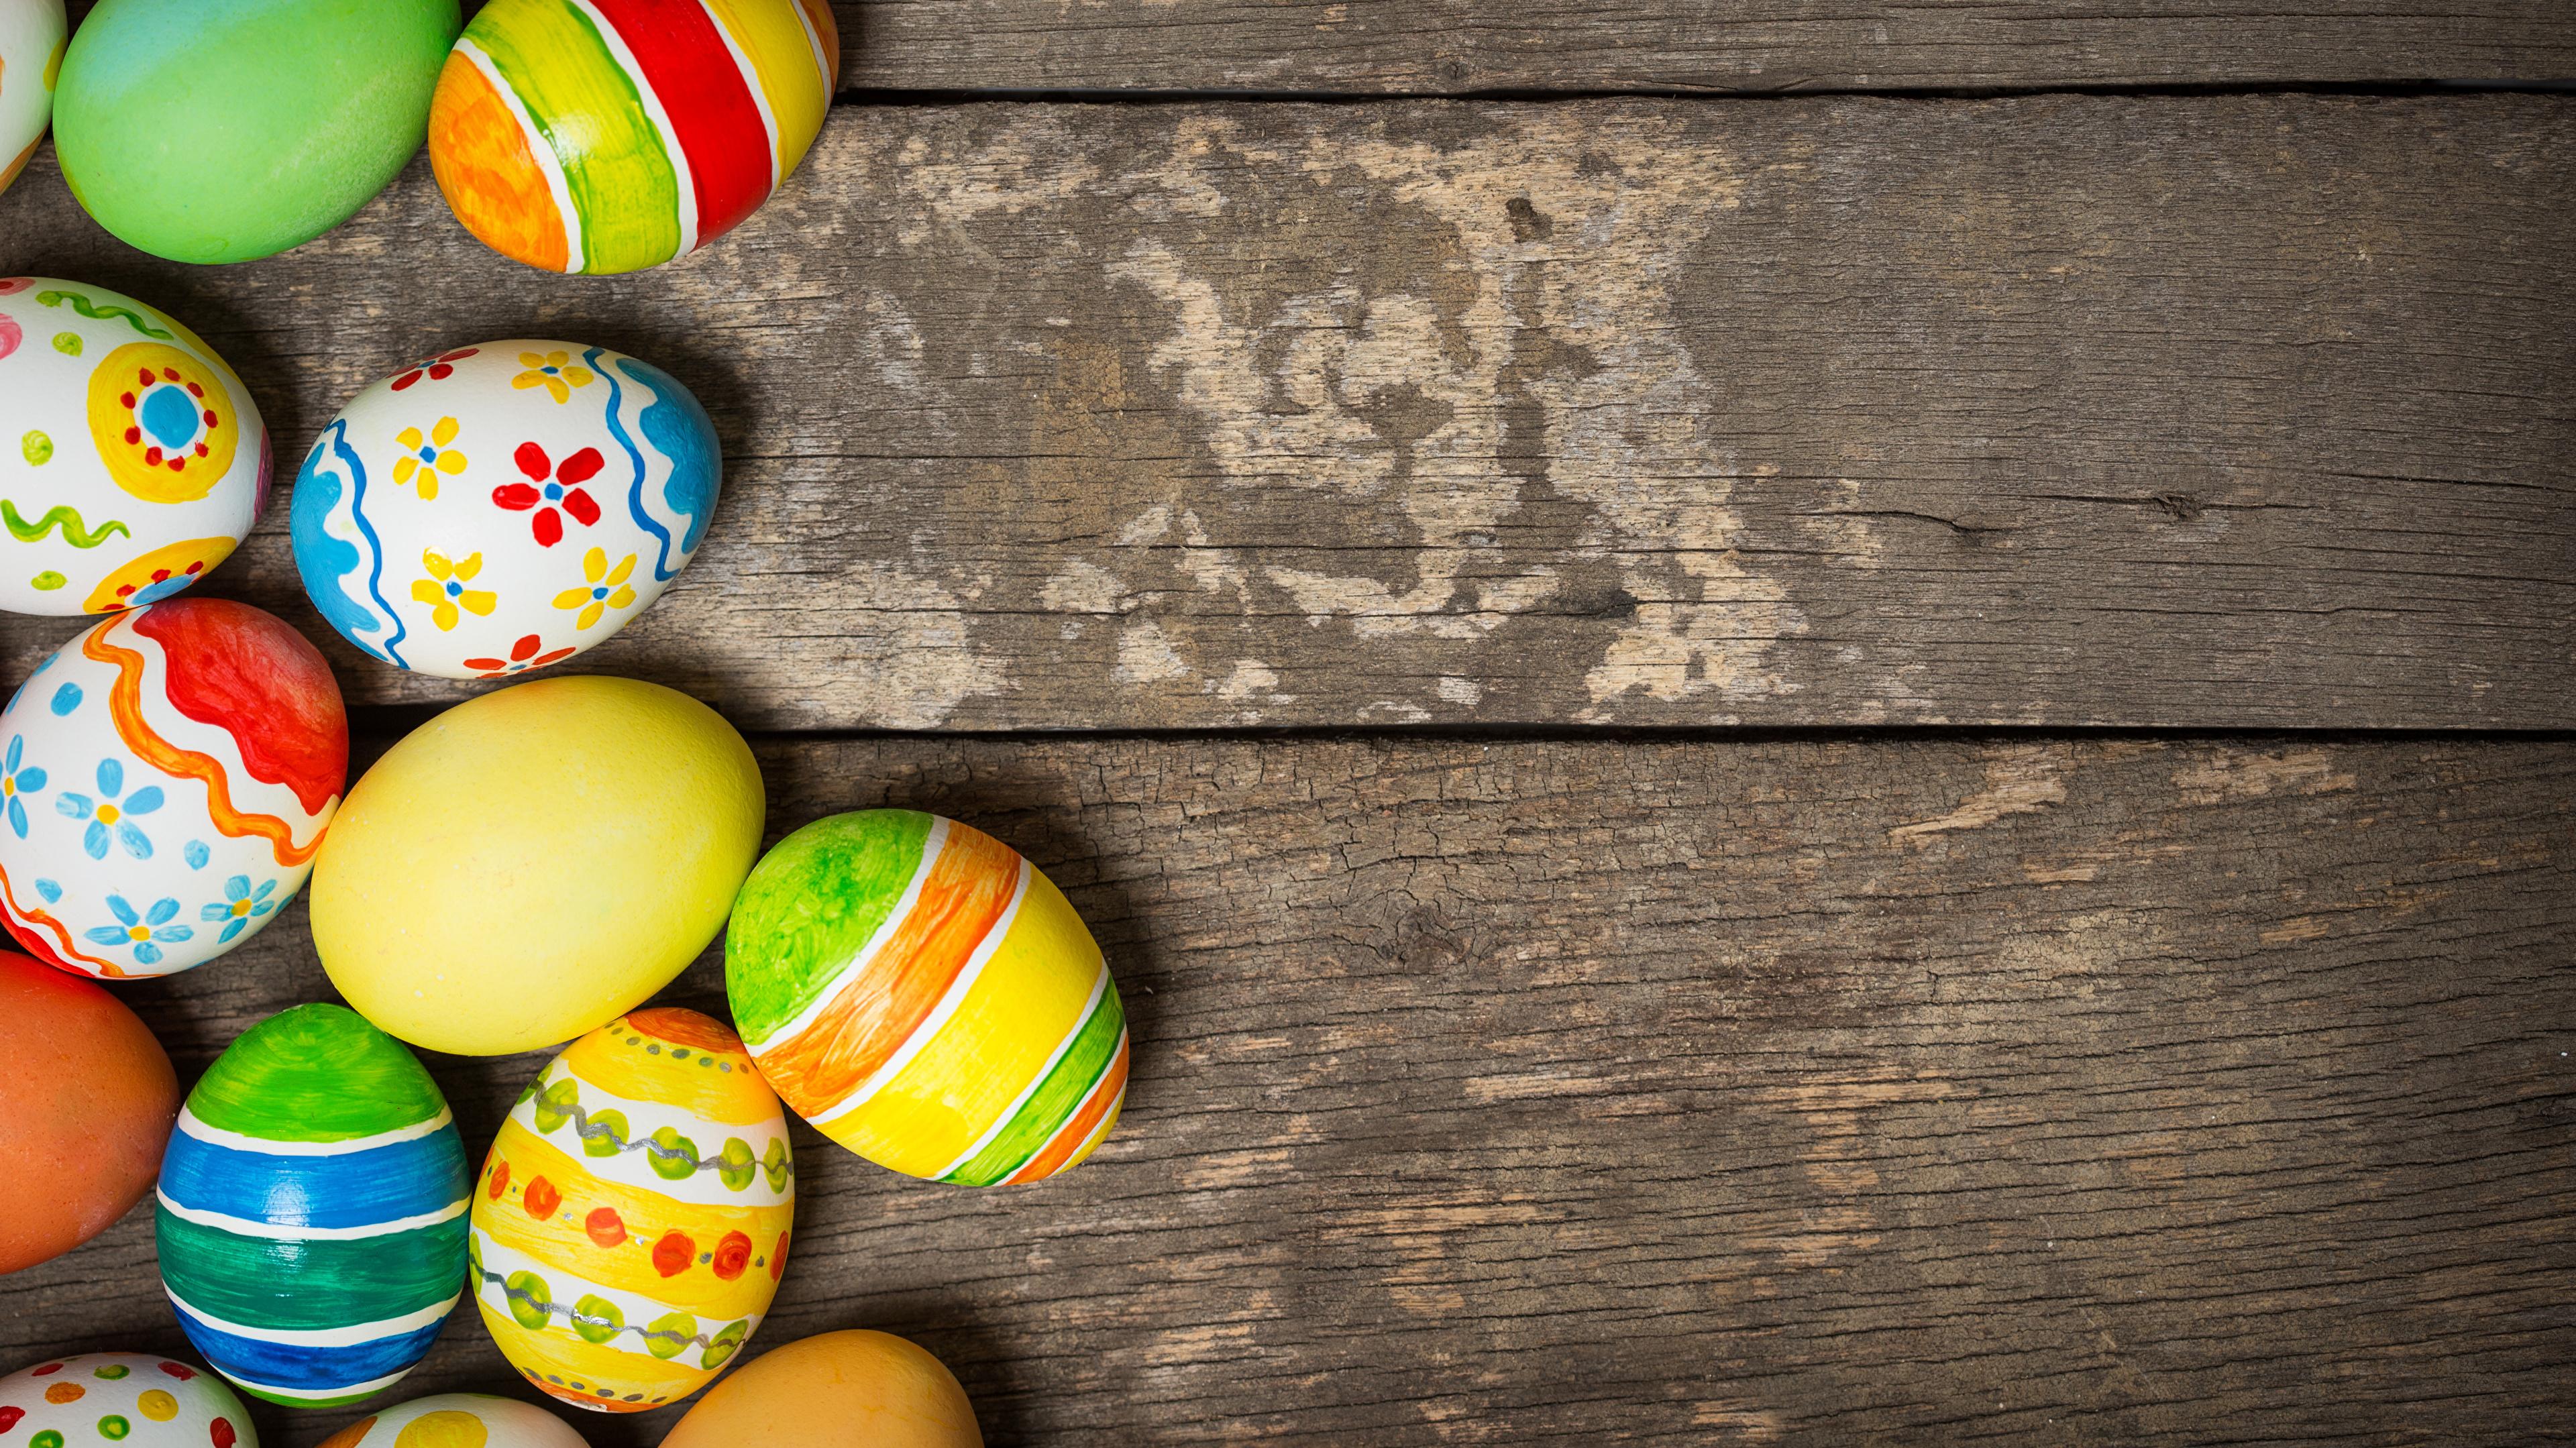 Image Easter Egg Holidays Boards